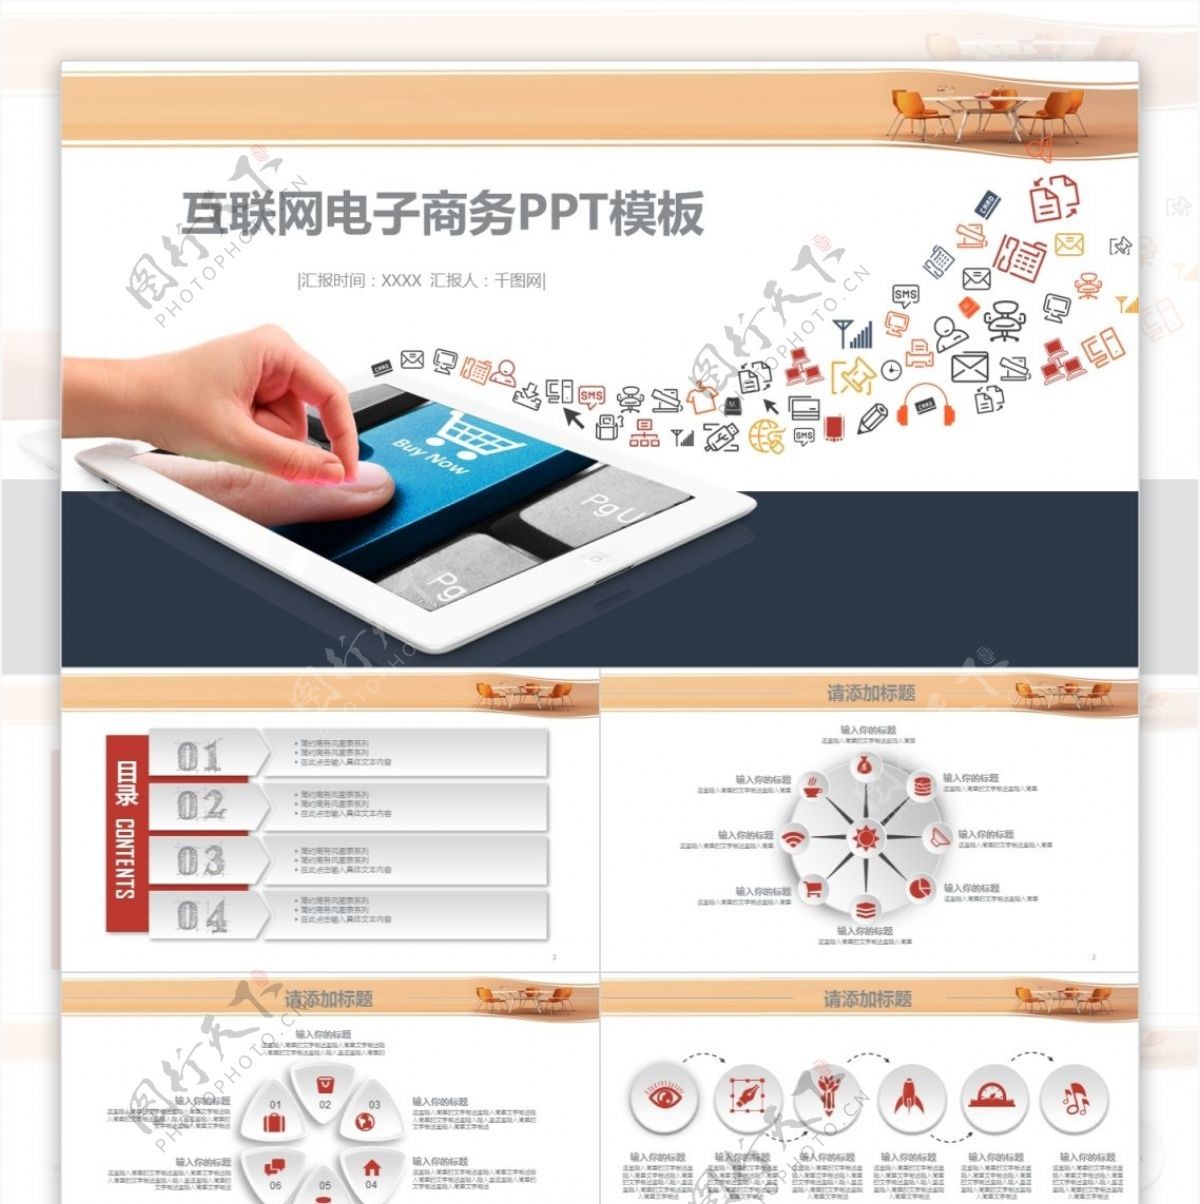 互联网营销电子商务PPT免费模板